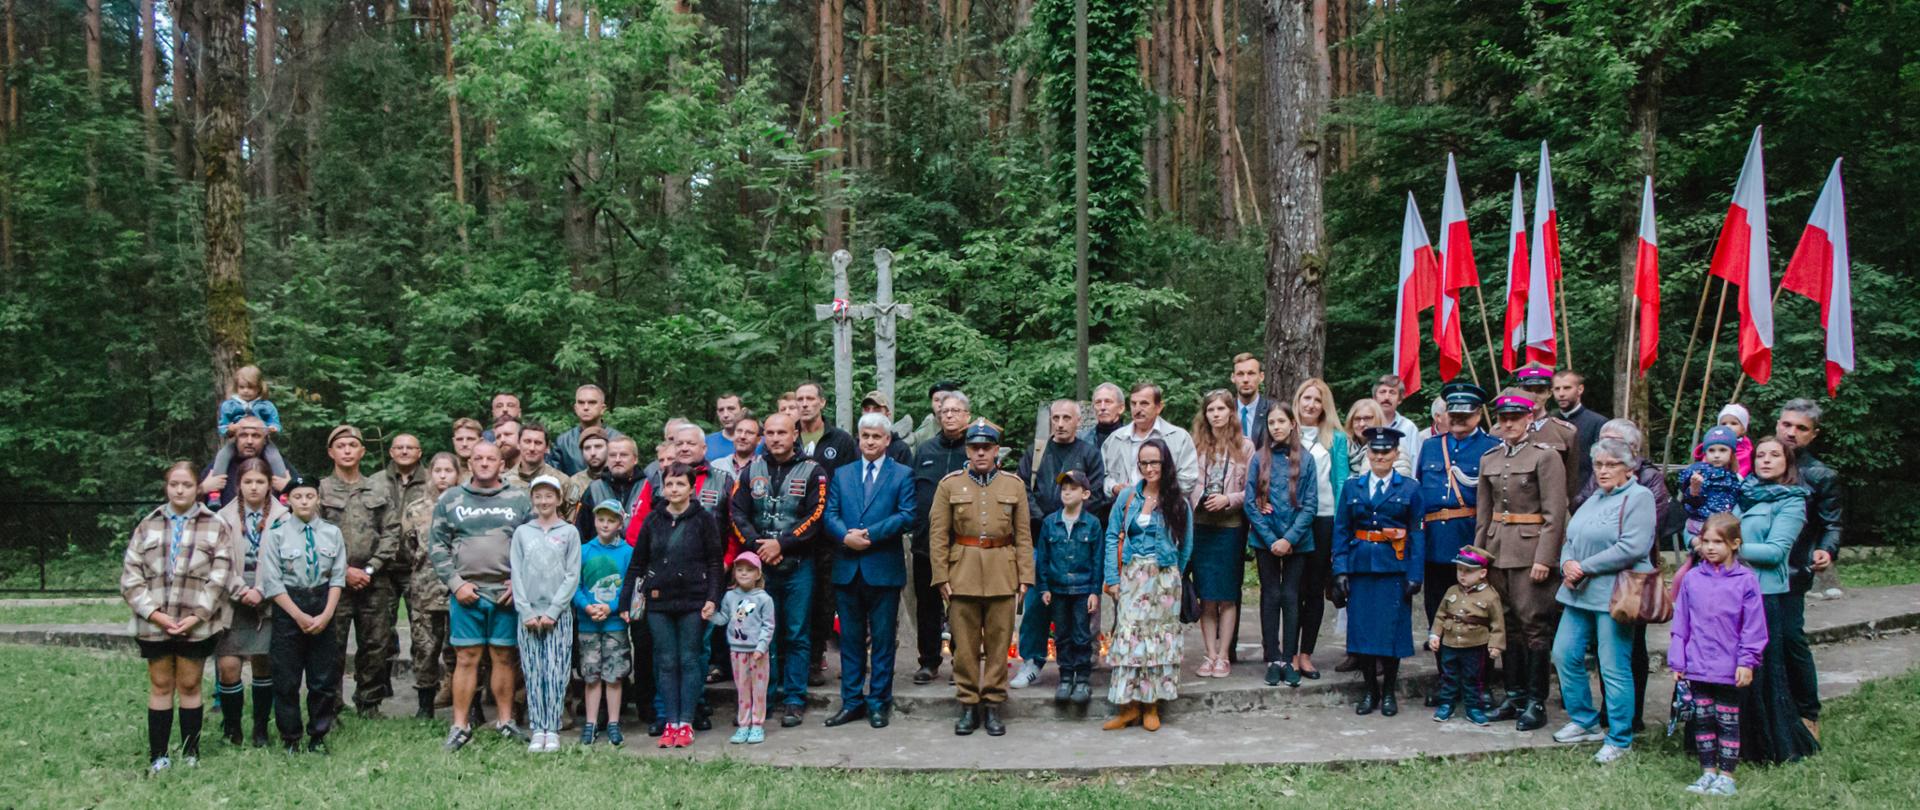 Upamiętnienie Cywilnych Obywateli RP - Ofiar Niemieckiego i Sowieckiego Totalitaryzmu w okresie II wojny światowej